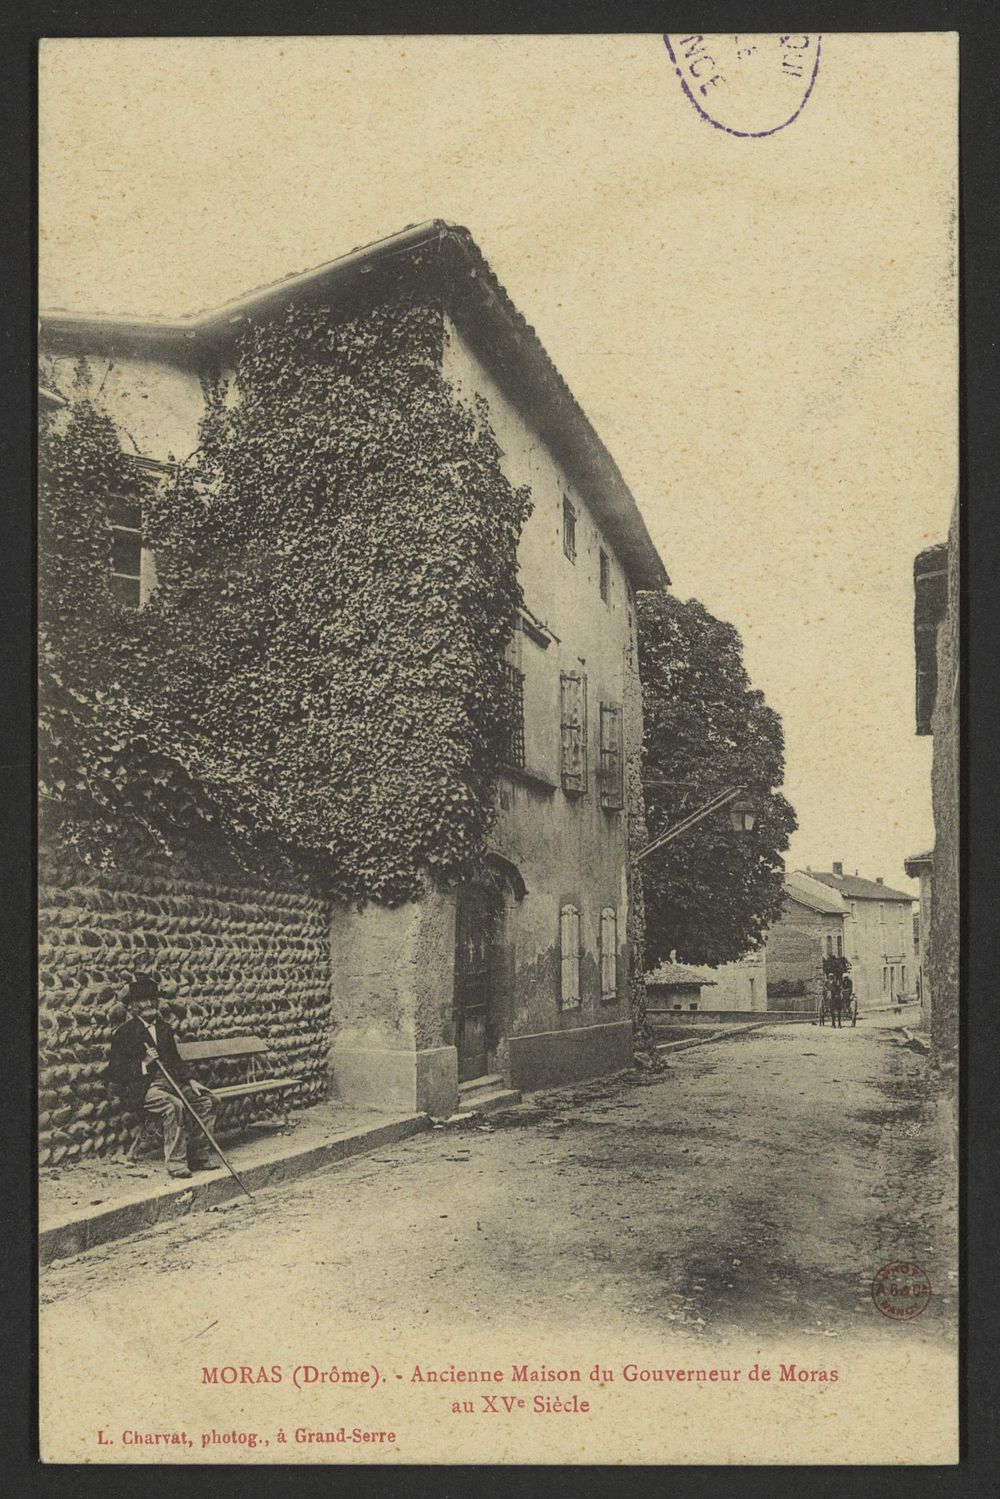 Moras (Drôme) - Ancienne maison du gouverneur de Moras au Xvè siècle